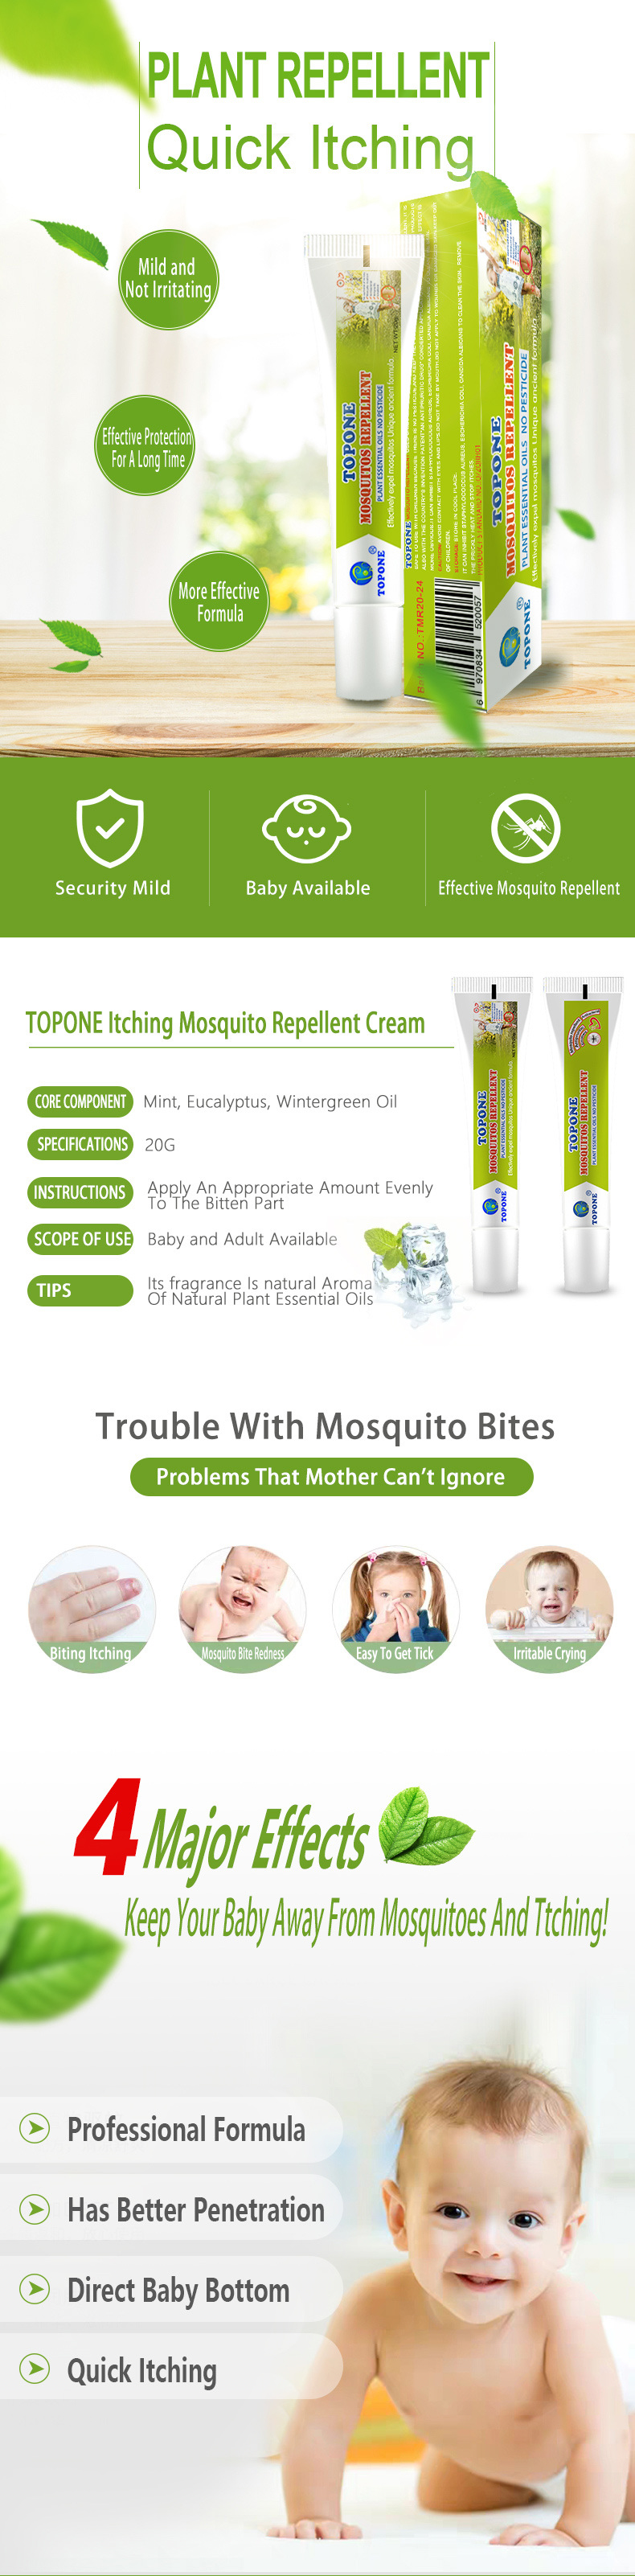 Mosquito Pest Repellent Killer Cream